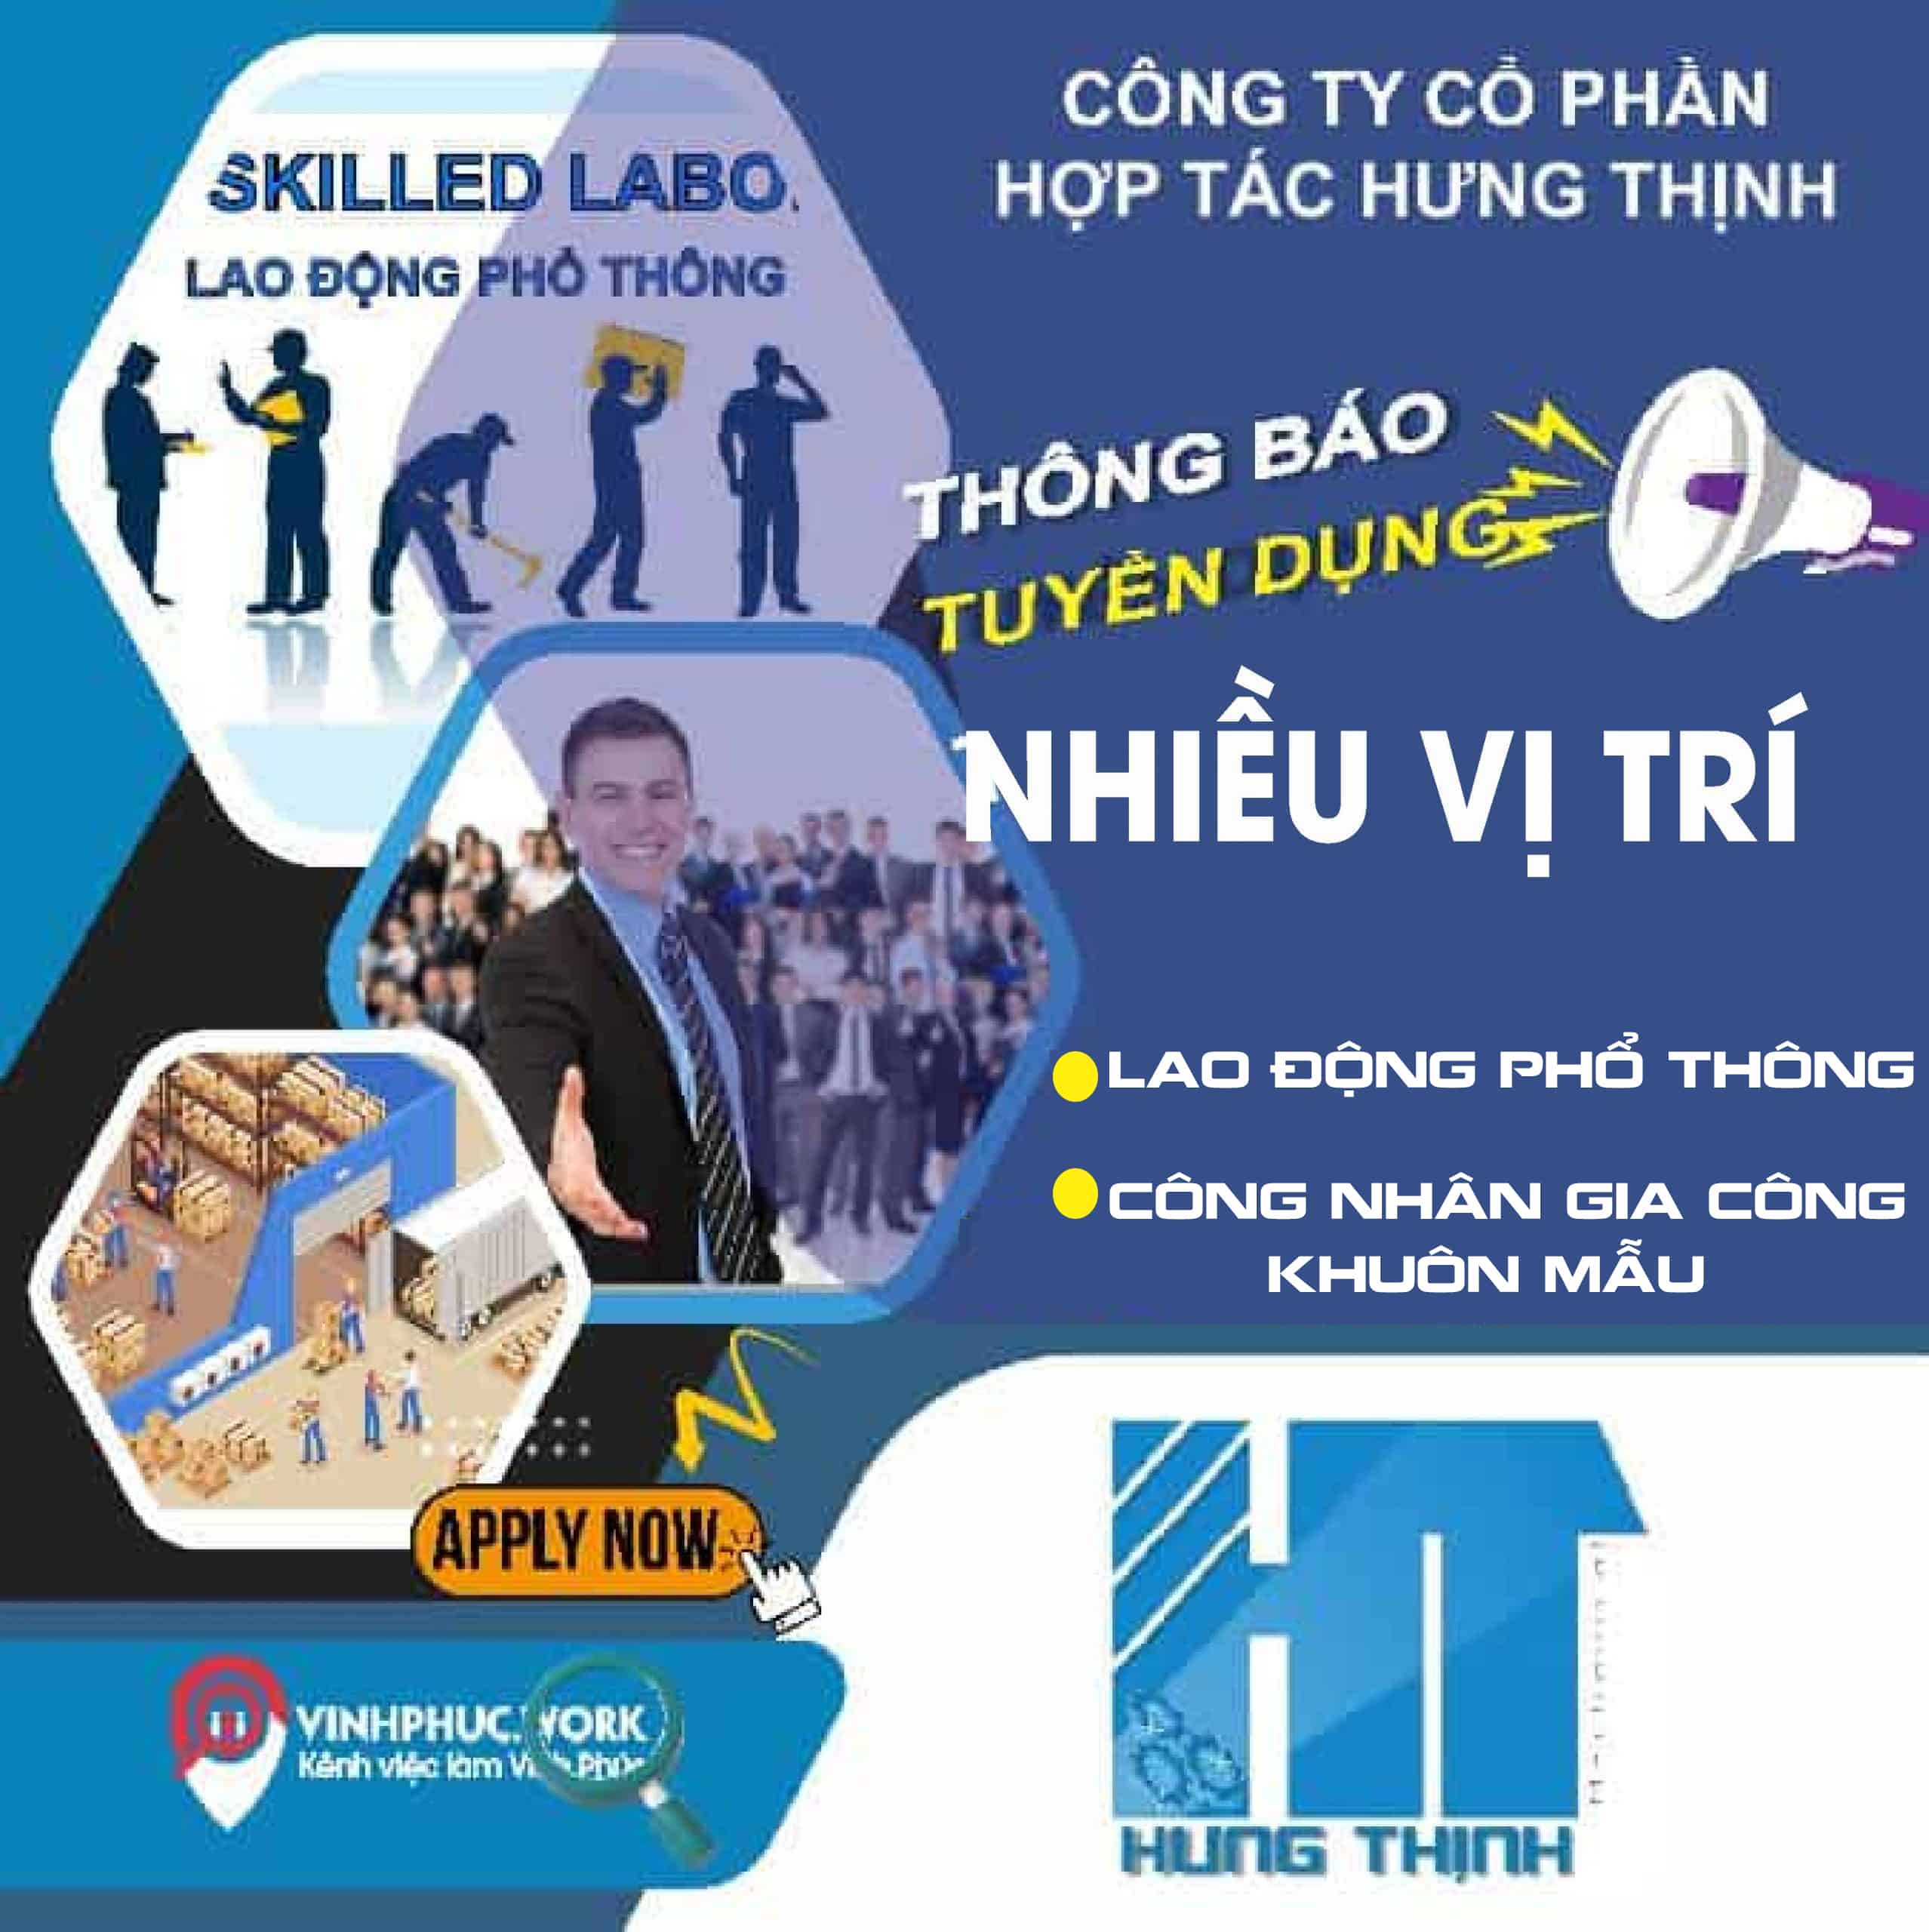 Cong Ty Co Phan Hop Tac Hung Thinh Tuyen Cong Nhan Gia Cong Khuon Mau Lao Dong Pho Thong 1